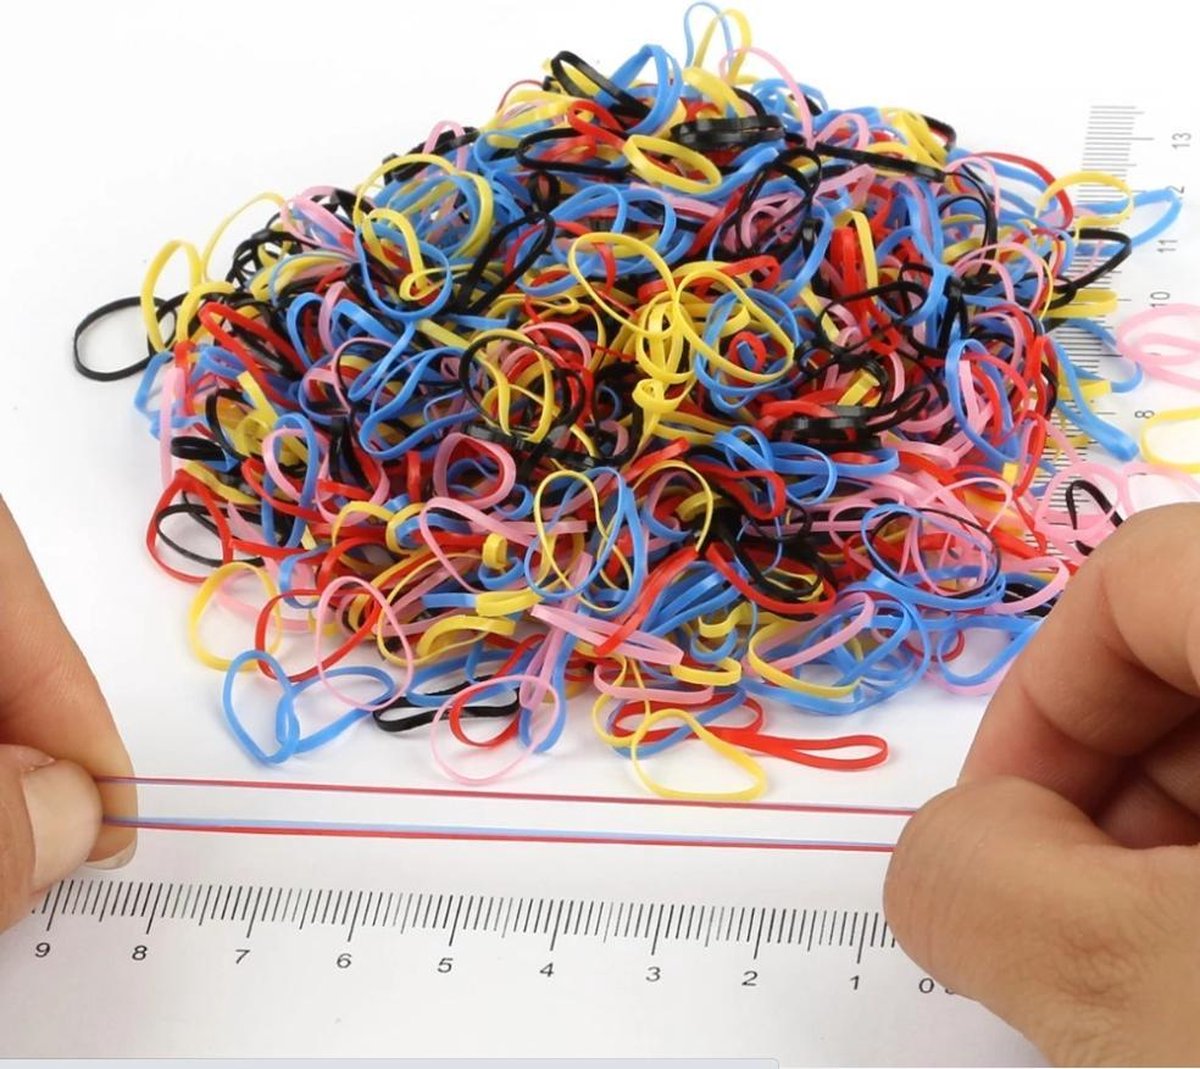 1000 STUKS - Kleine elastiekjes - Multicolor donker - Verschillende kleuren - Vlechtjes Elastieken - Mini haar elastiek voor dreadlocks / vlechten - kinderen / volwassenen